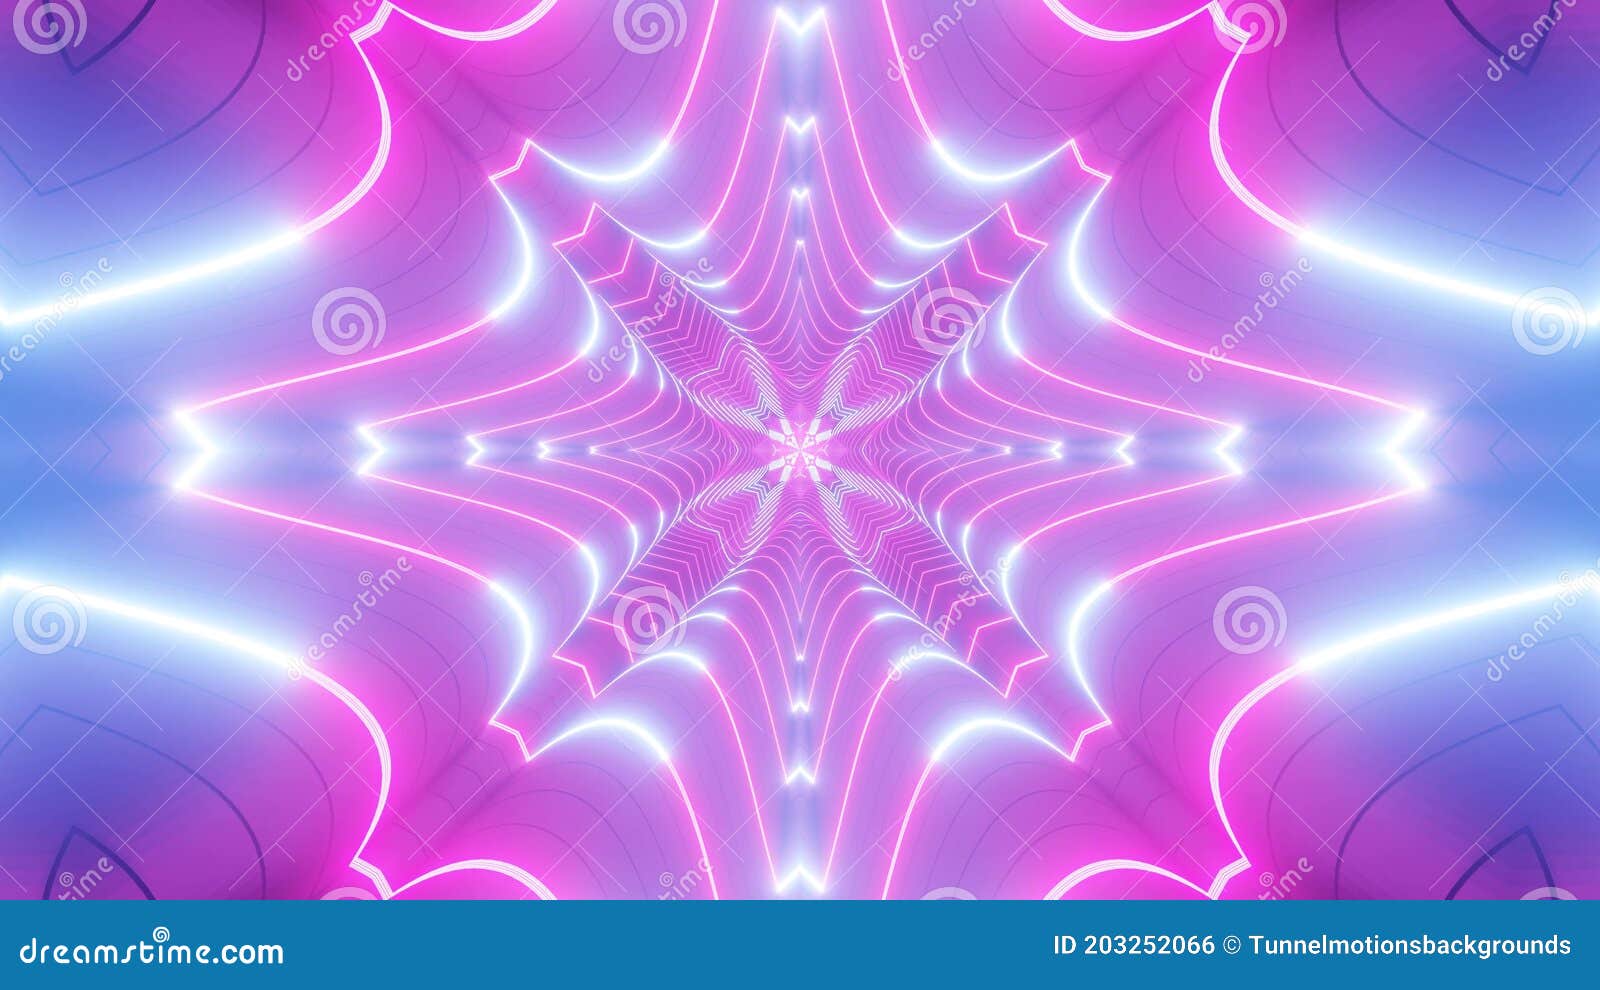 Khi nhìn thấy hình ảnh đường hầm Neon trừu tượng chuyển màu hồng và xanh 3d, bạn sẽ được trải nghiệm một cảm giác khác biệt của sự tinh tế và hiện đại. Hãy khám phá và cảm nhận sự mê hoặc của hình ảnh này, bạn sẽ không thể rời mắt được!